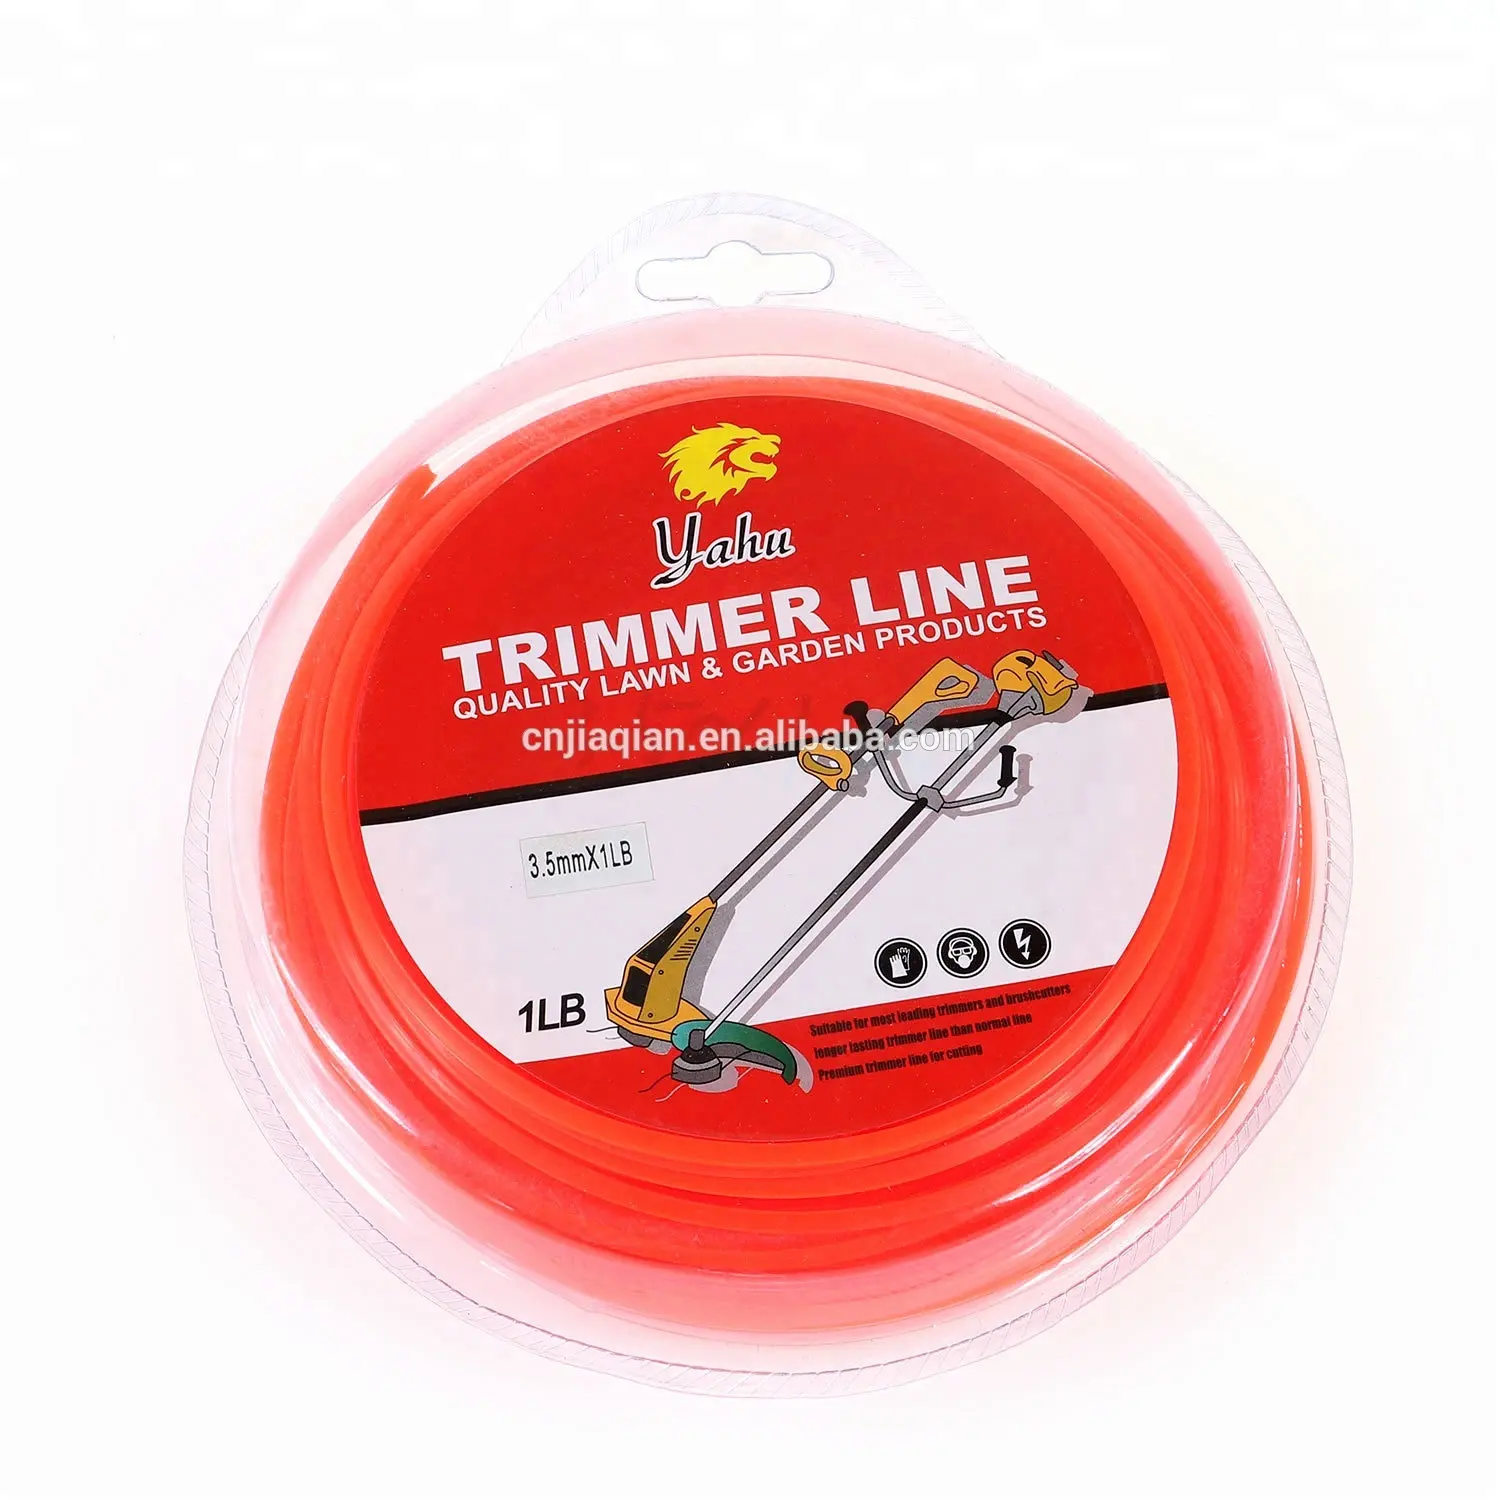 Trimmer लाइन trimmer के सिर नायलॉन लाइन घास कटर के लिए stihl ब्रश कटर स्पेयर पार्ट्स के लिए फिट बैठता है